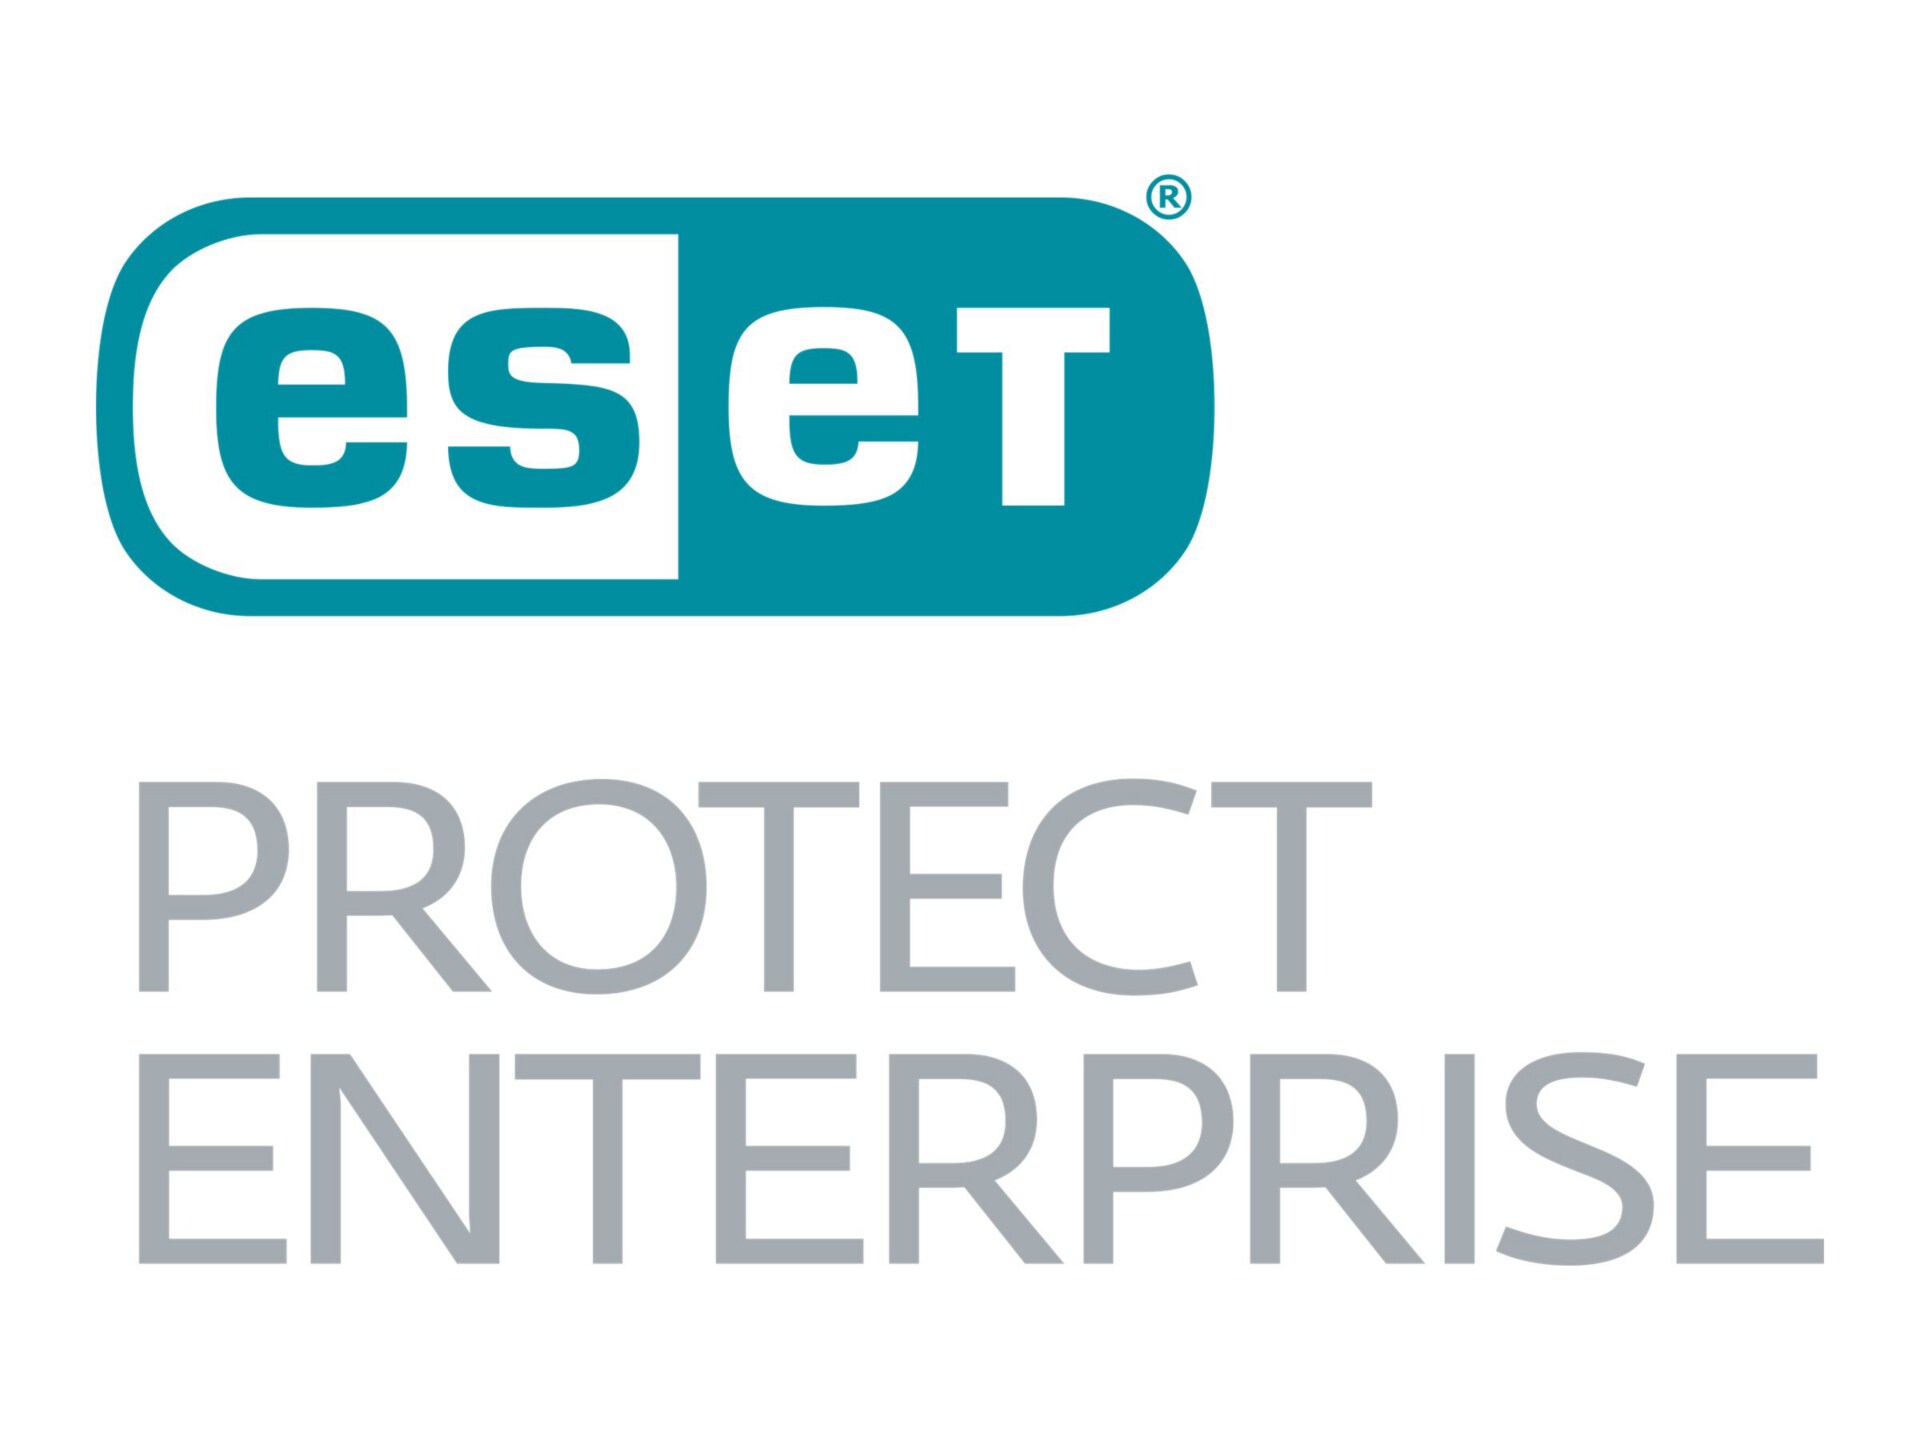 ESET PROTECT Enterprise - subscription license enlargement (3 years) - 1 de